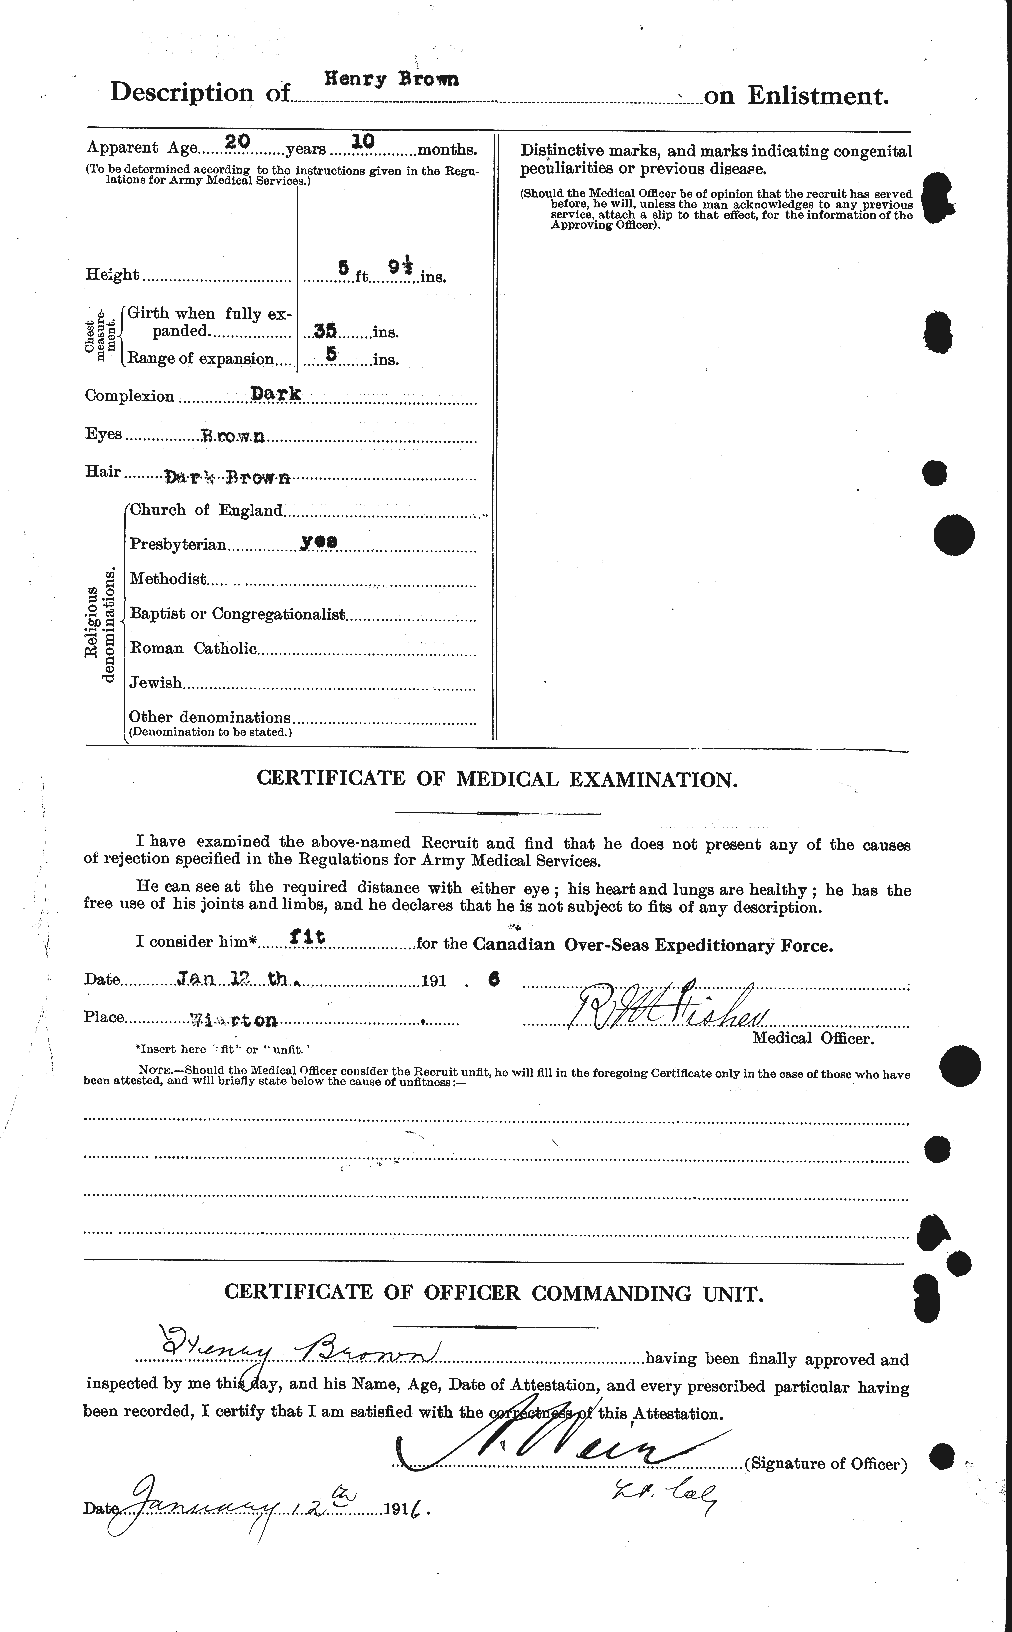 Dossiers du Personnel de la Première Guerre mondiale - CEC 265508b